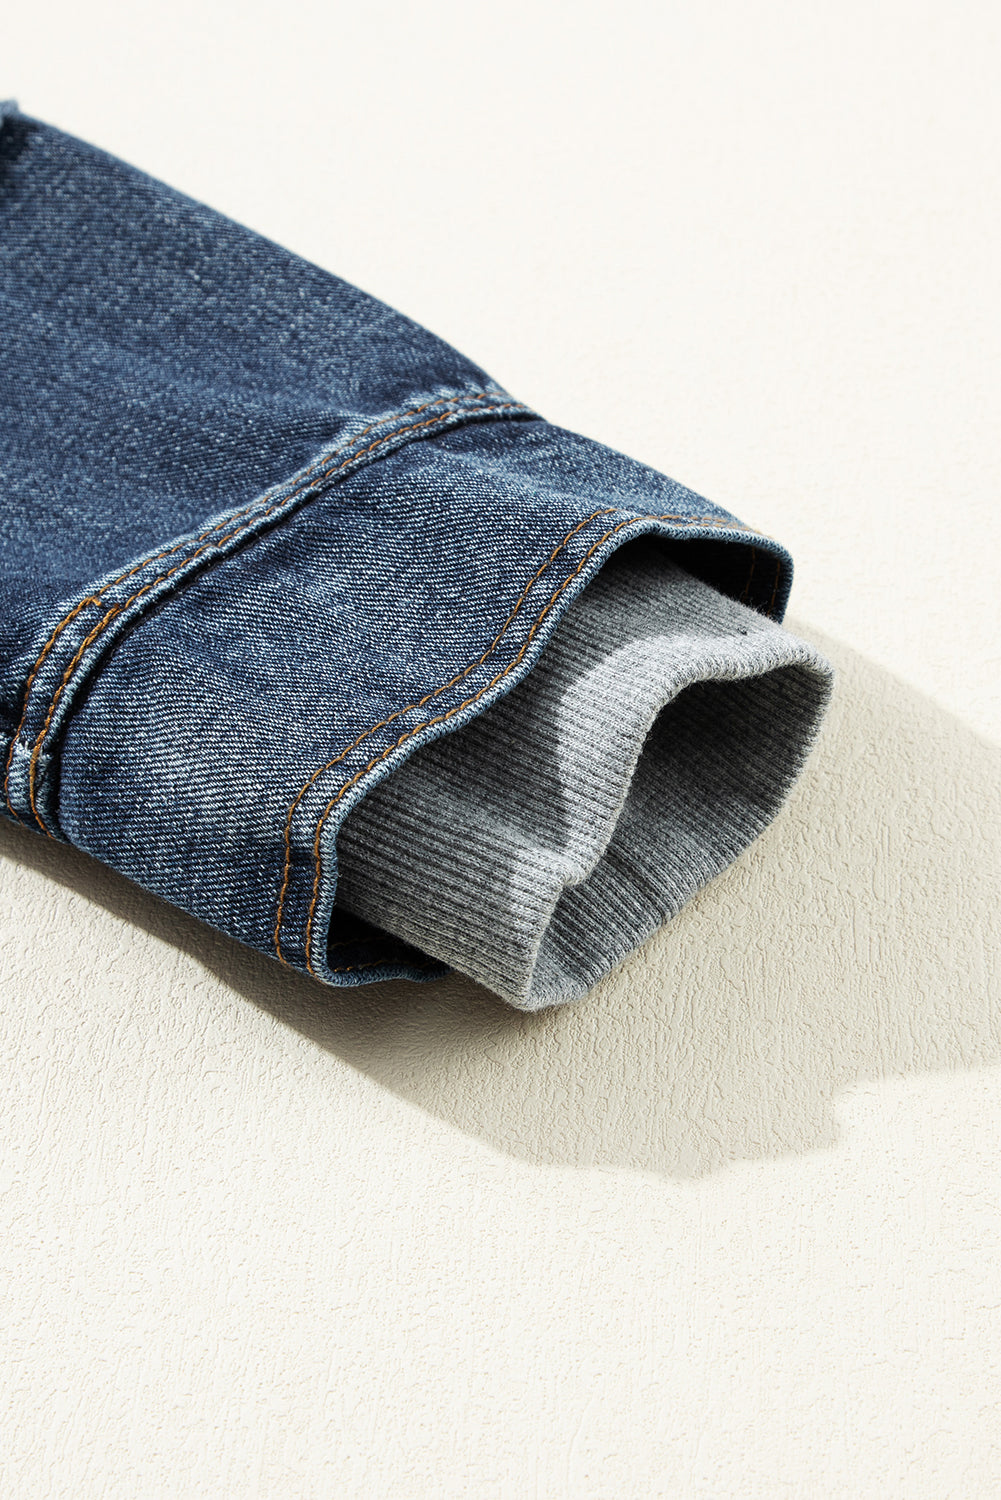 Dunkelblaue, zweiteilige Jeansjacke mit Kapuze und Reißverschluss